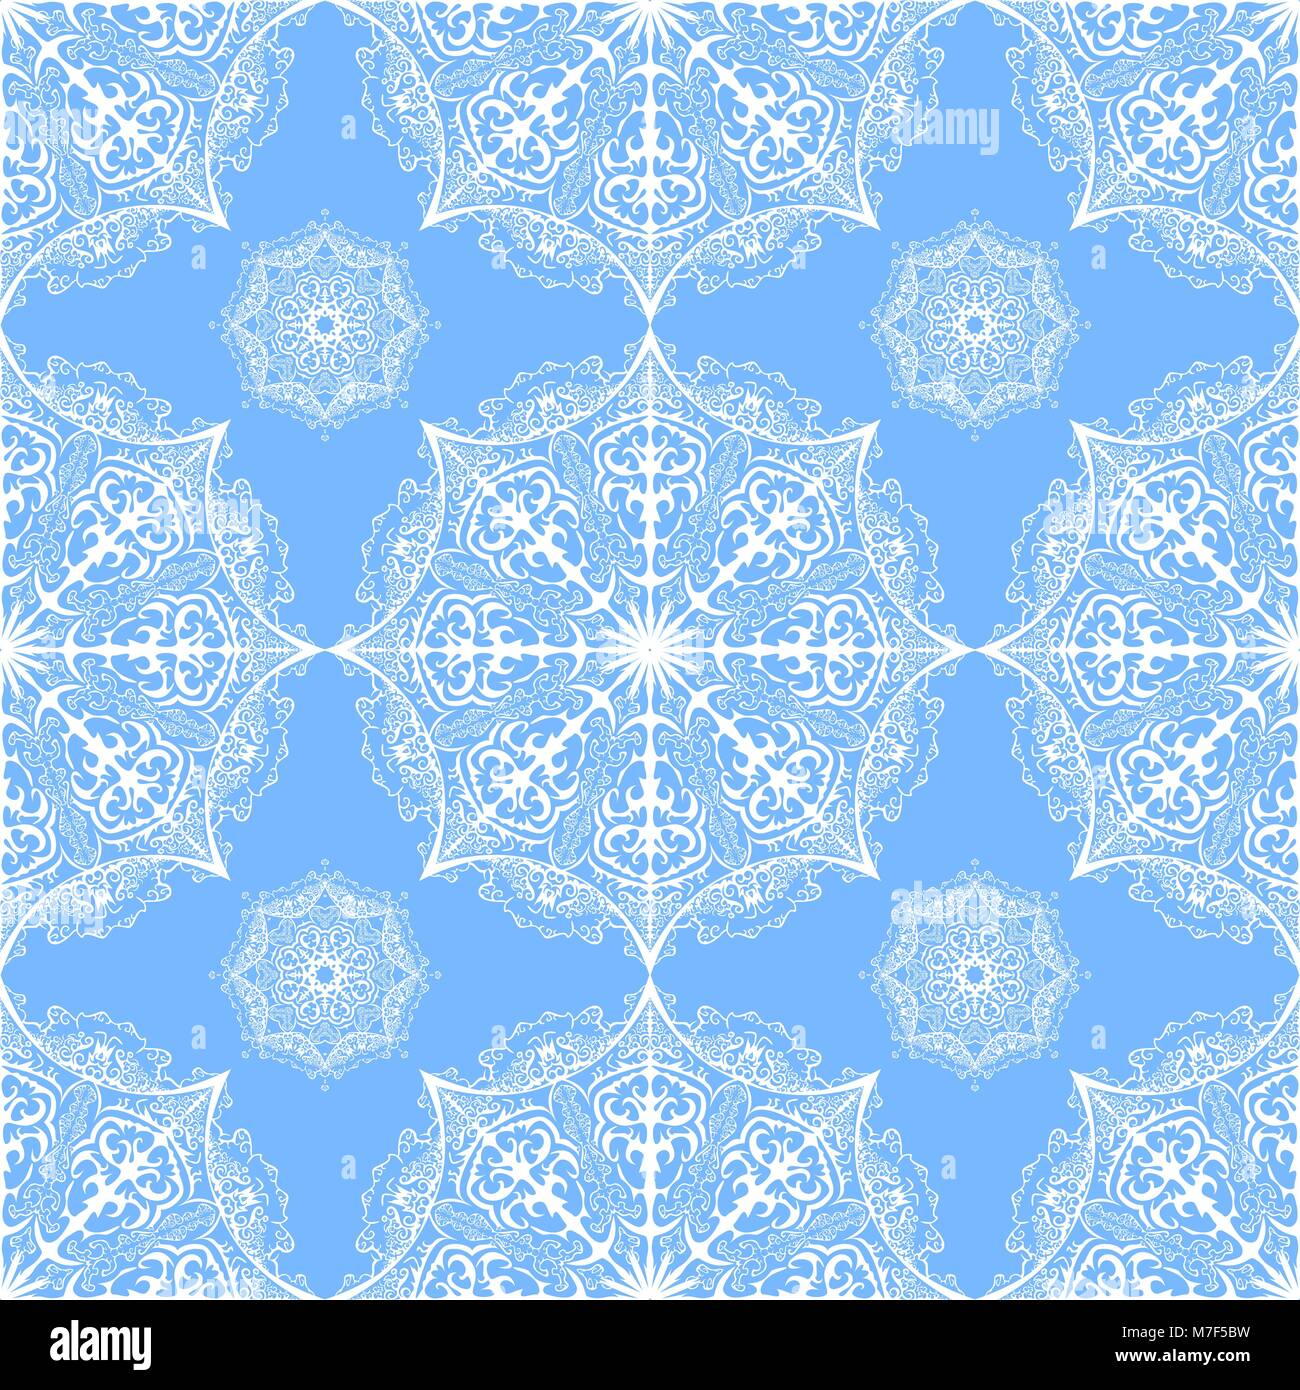 Modèle de vecteur seamless white snowflakes. Mandala ornés sur fond bleu Illustration de Vecteur